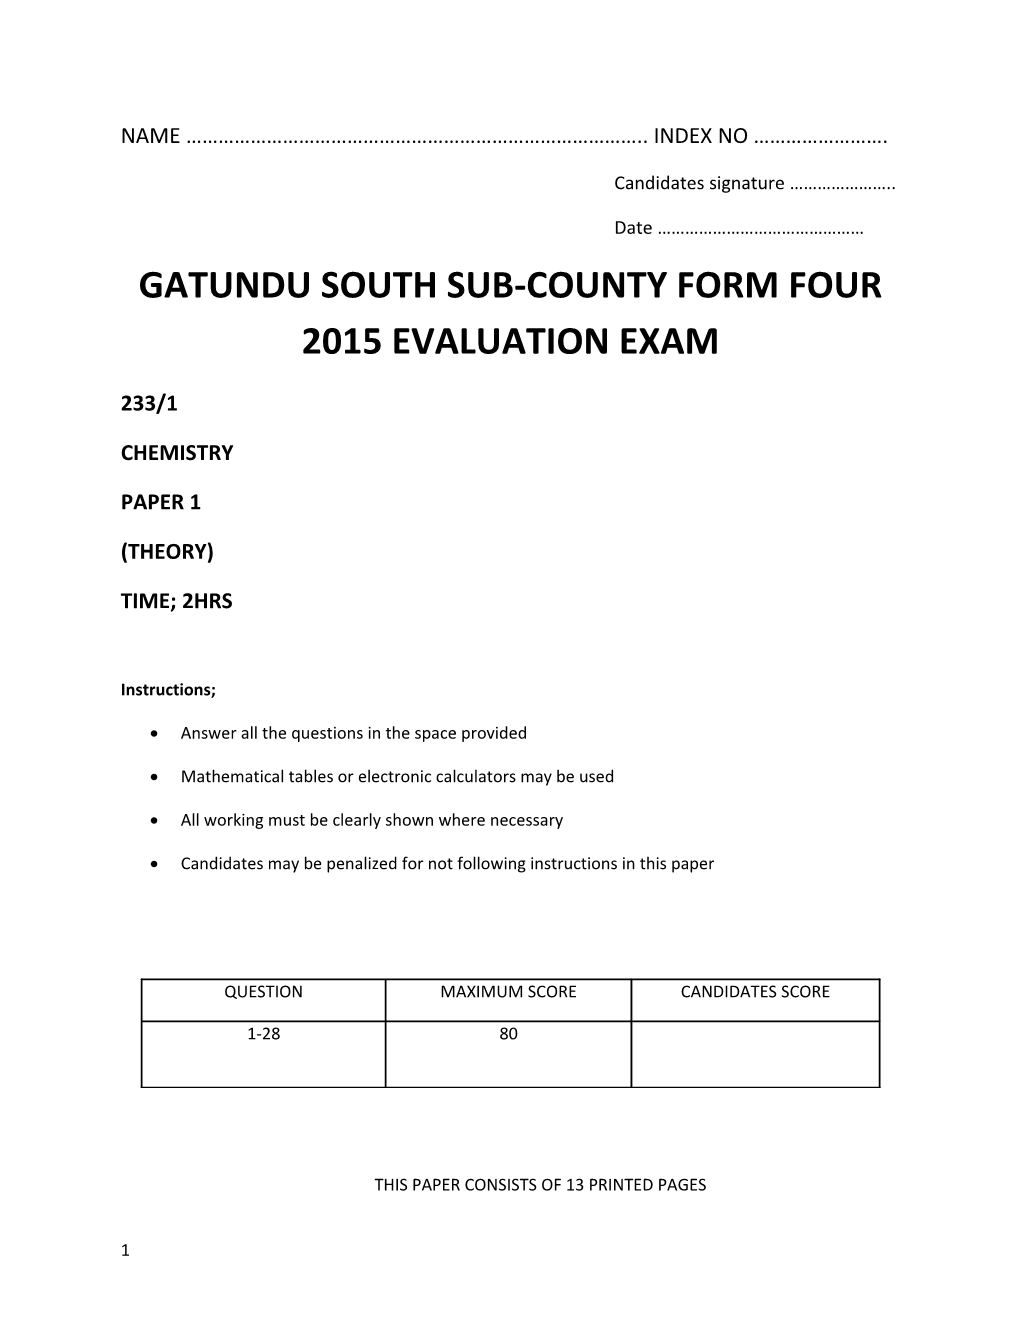 Gatundu South Sub-County Form Four 2015 Evaluation Exam